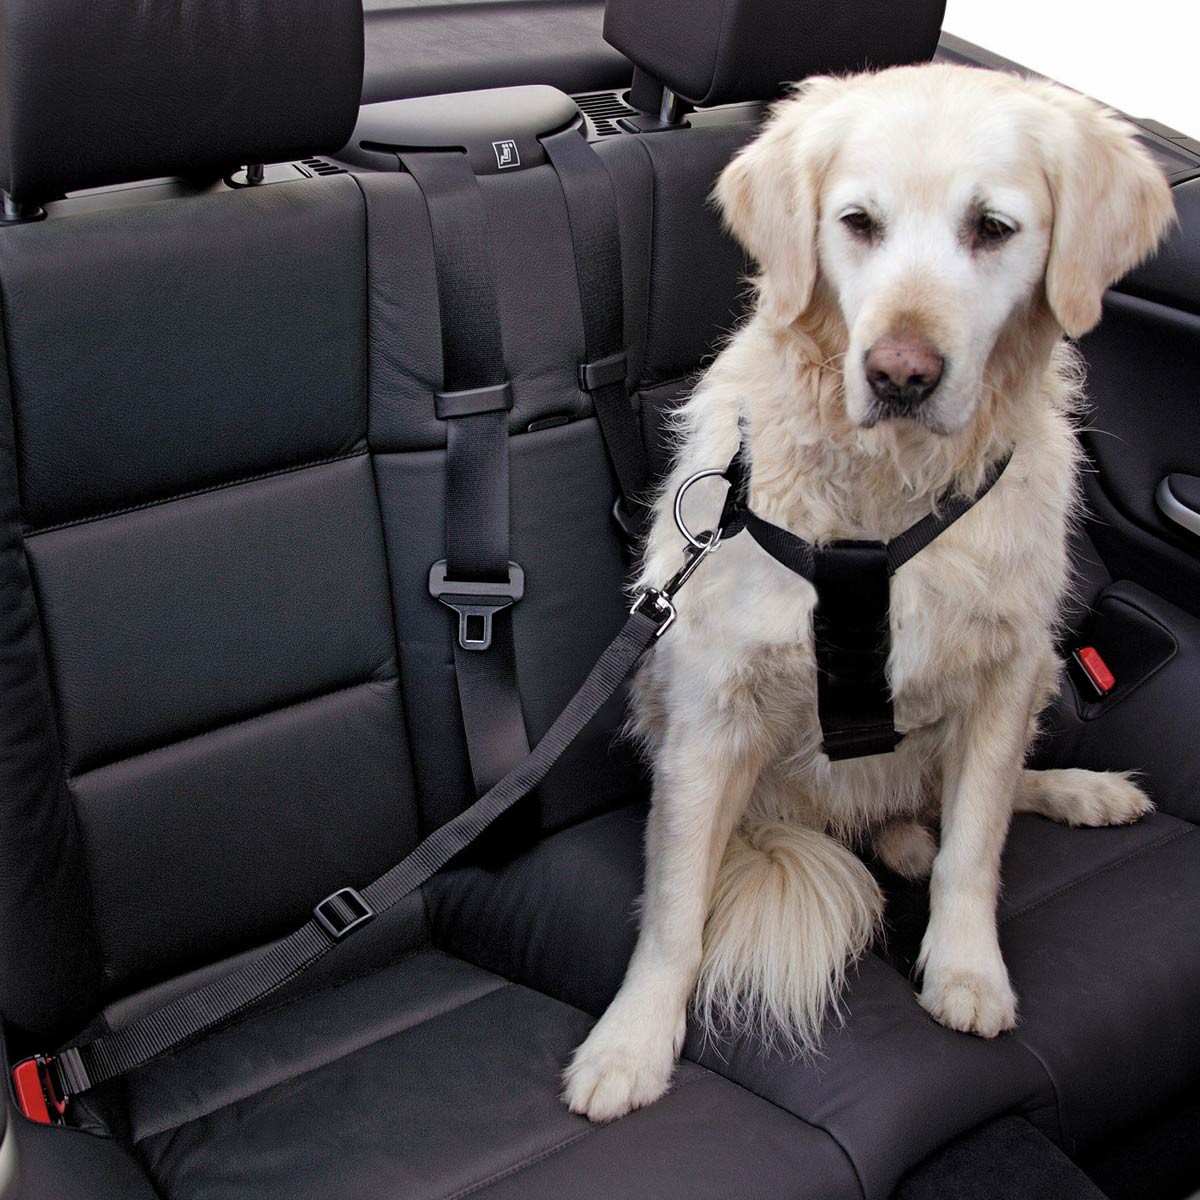 car dog harness size s, black adjustable